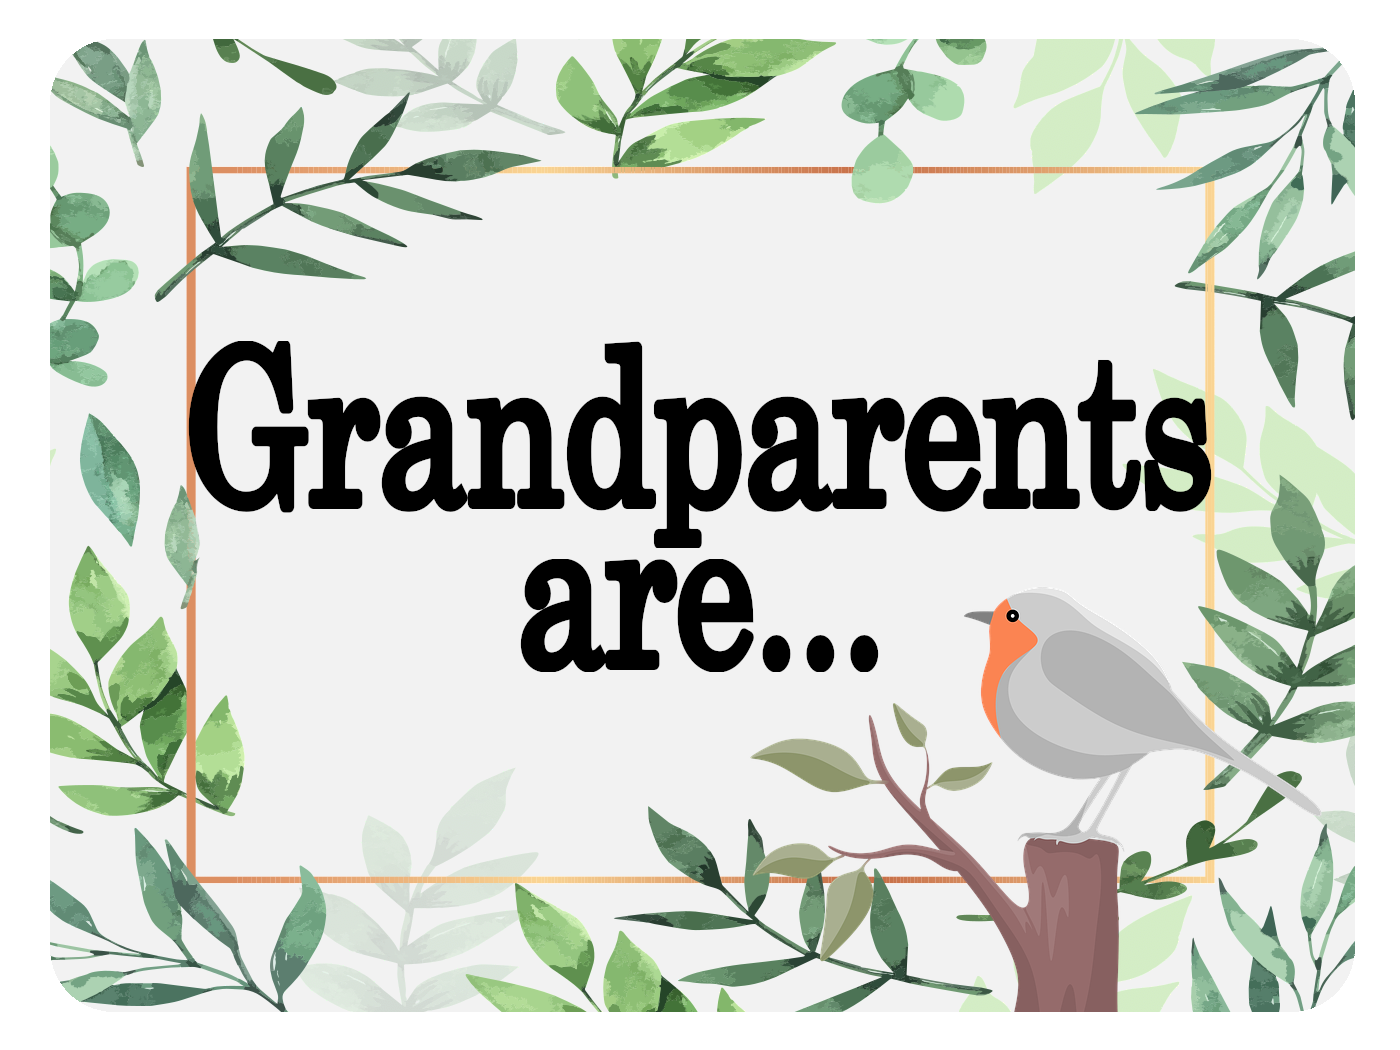 Grandparents are...